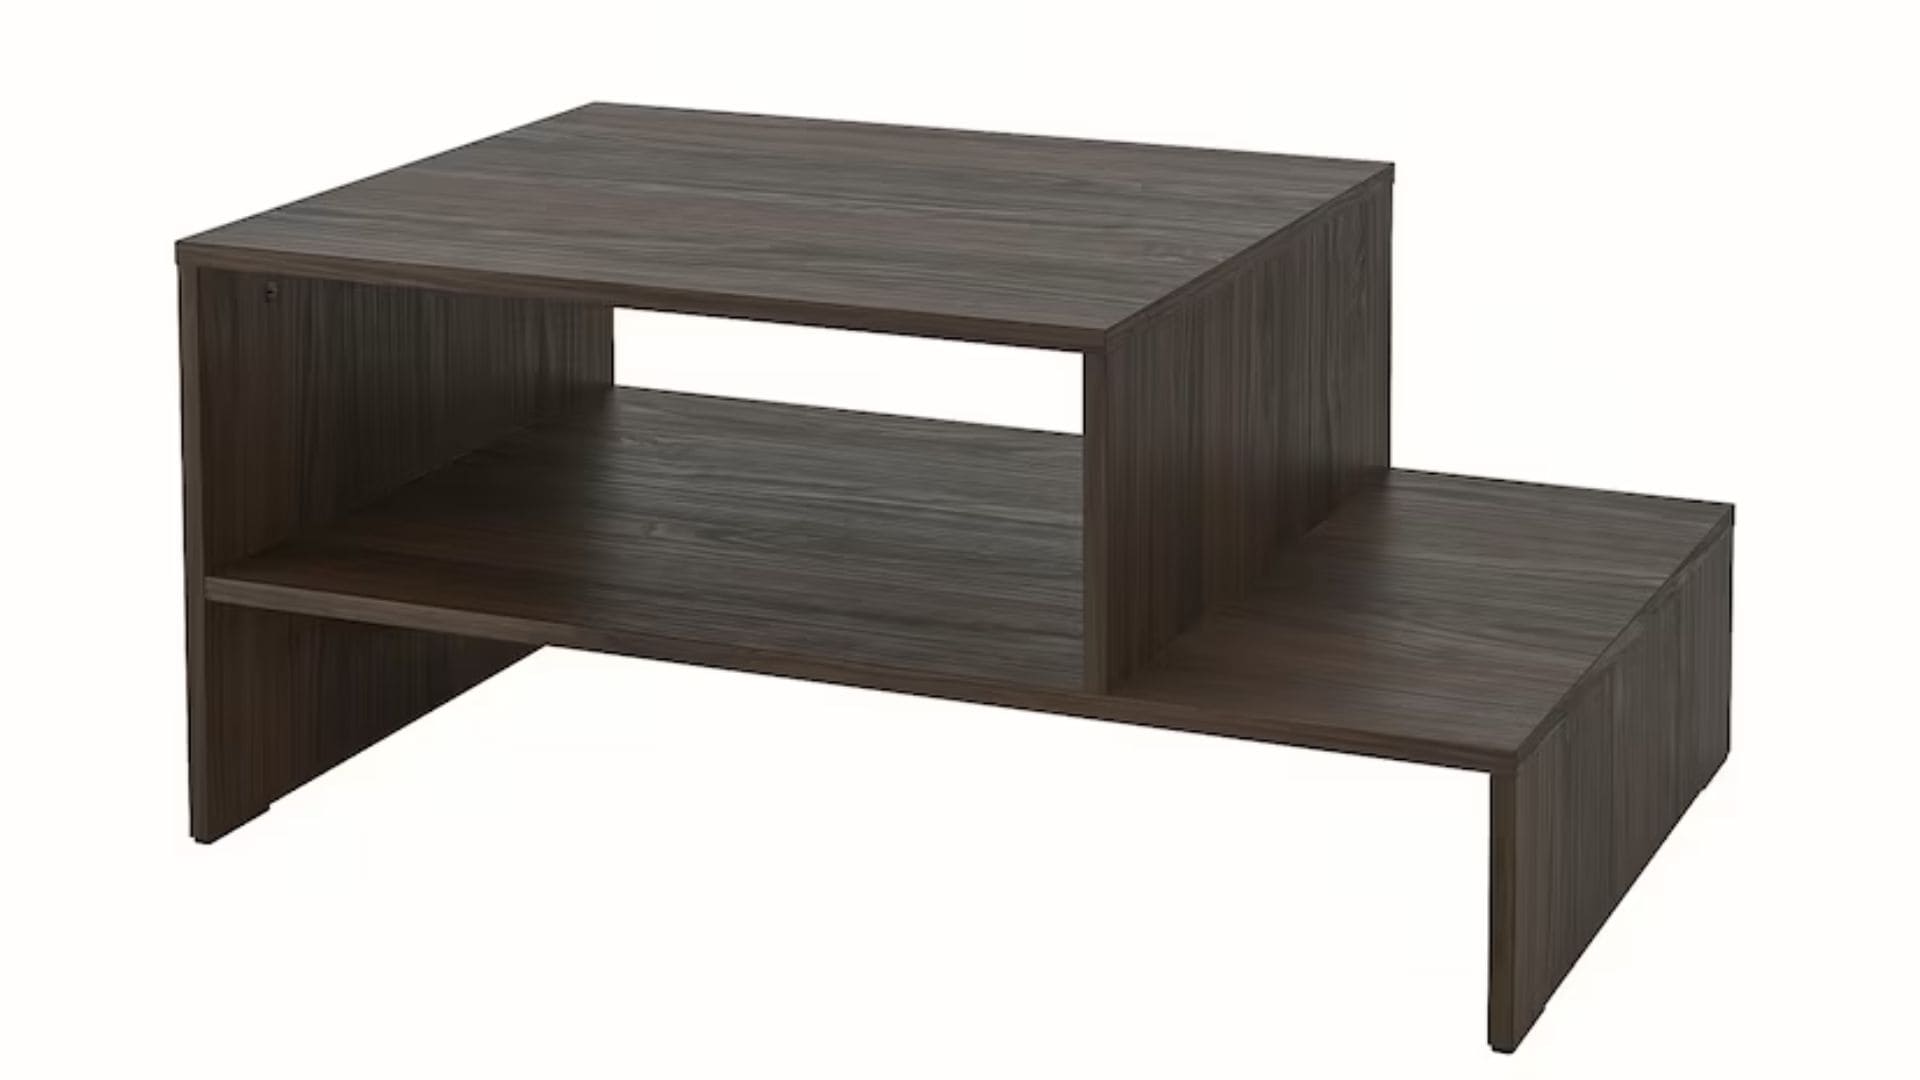 La mesa de centro de IKEA más original en novedades